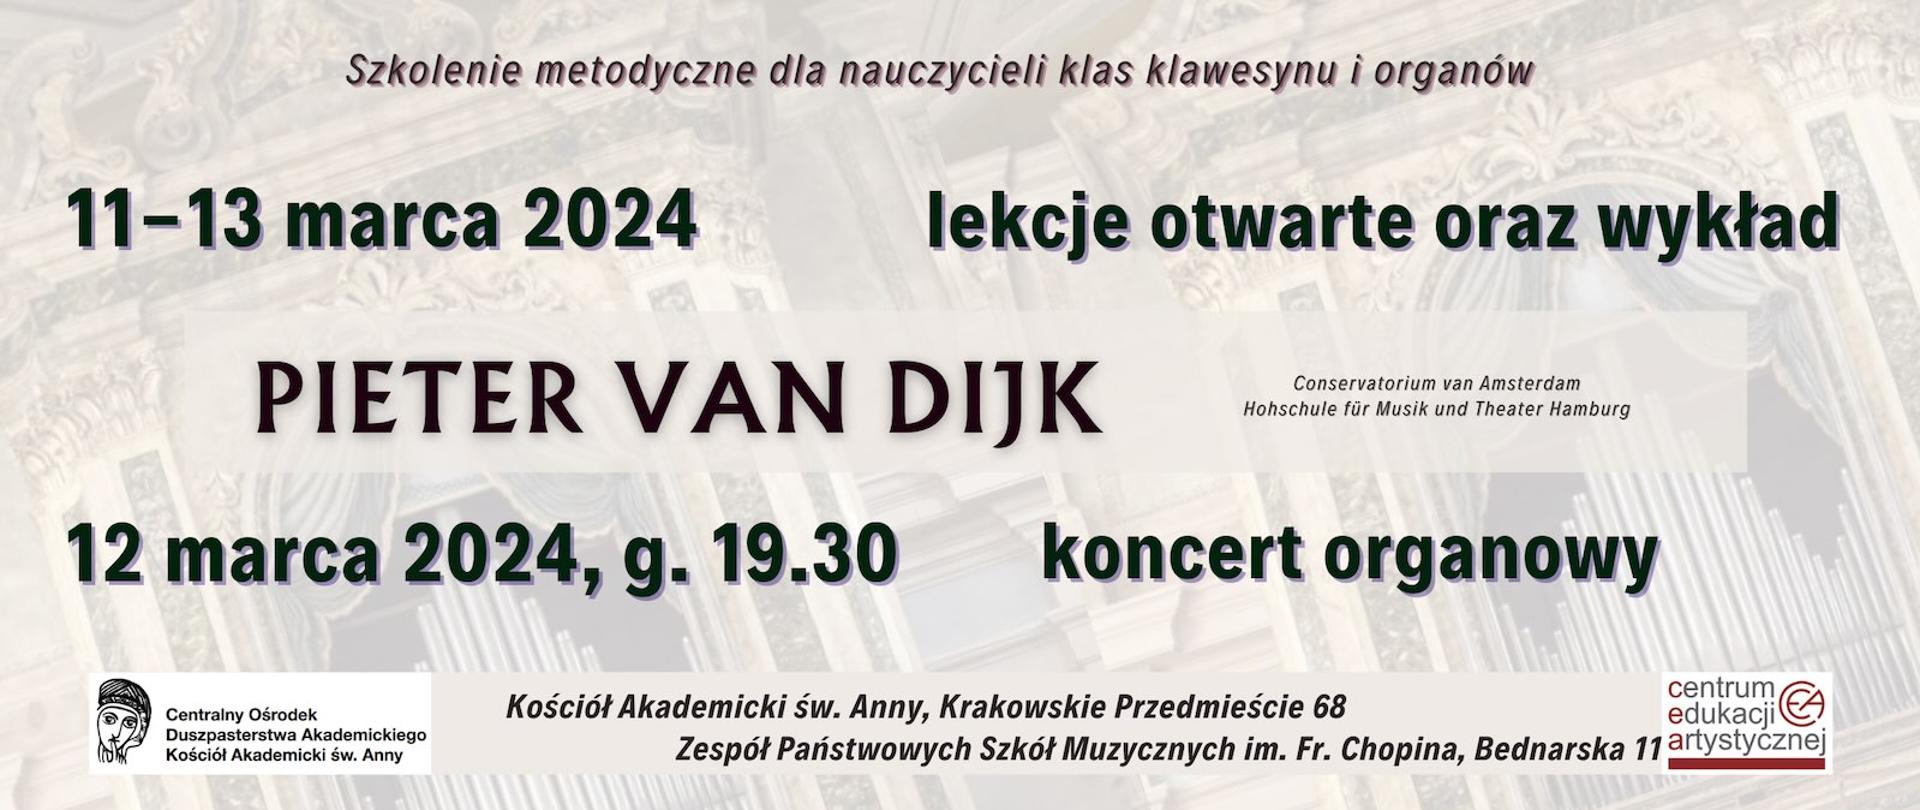 Baner - 11-13.03.2024 - Pieter van Dijk - warsztaty organowe